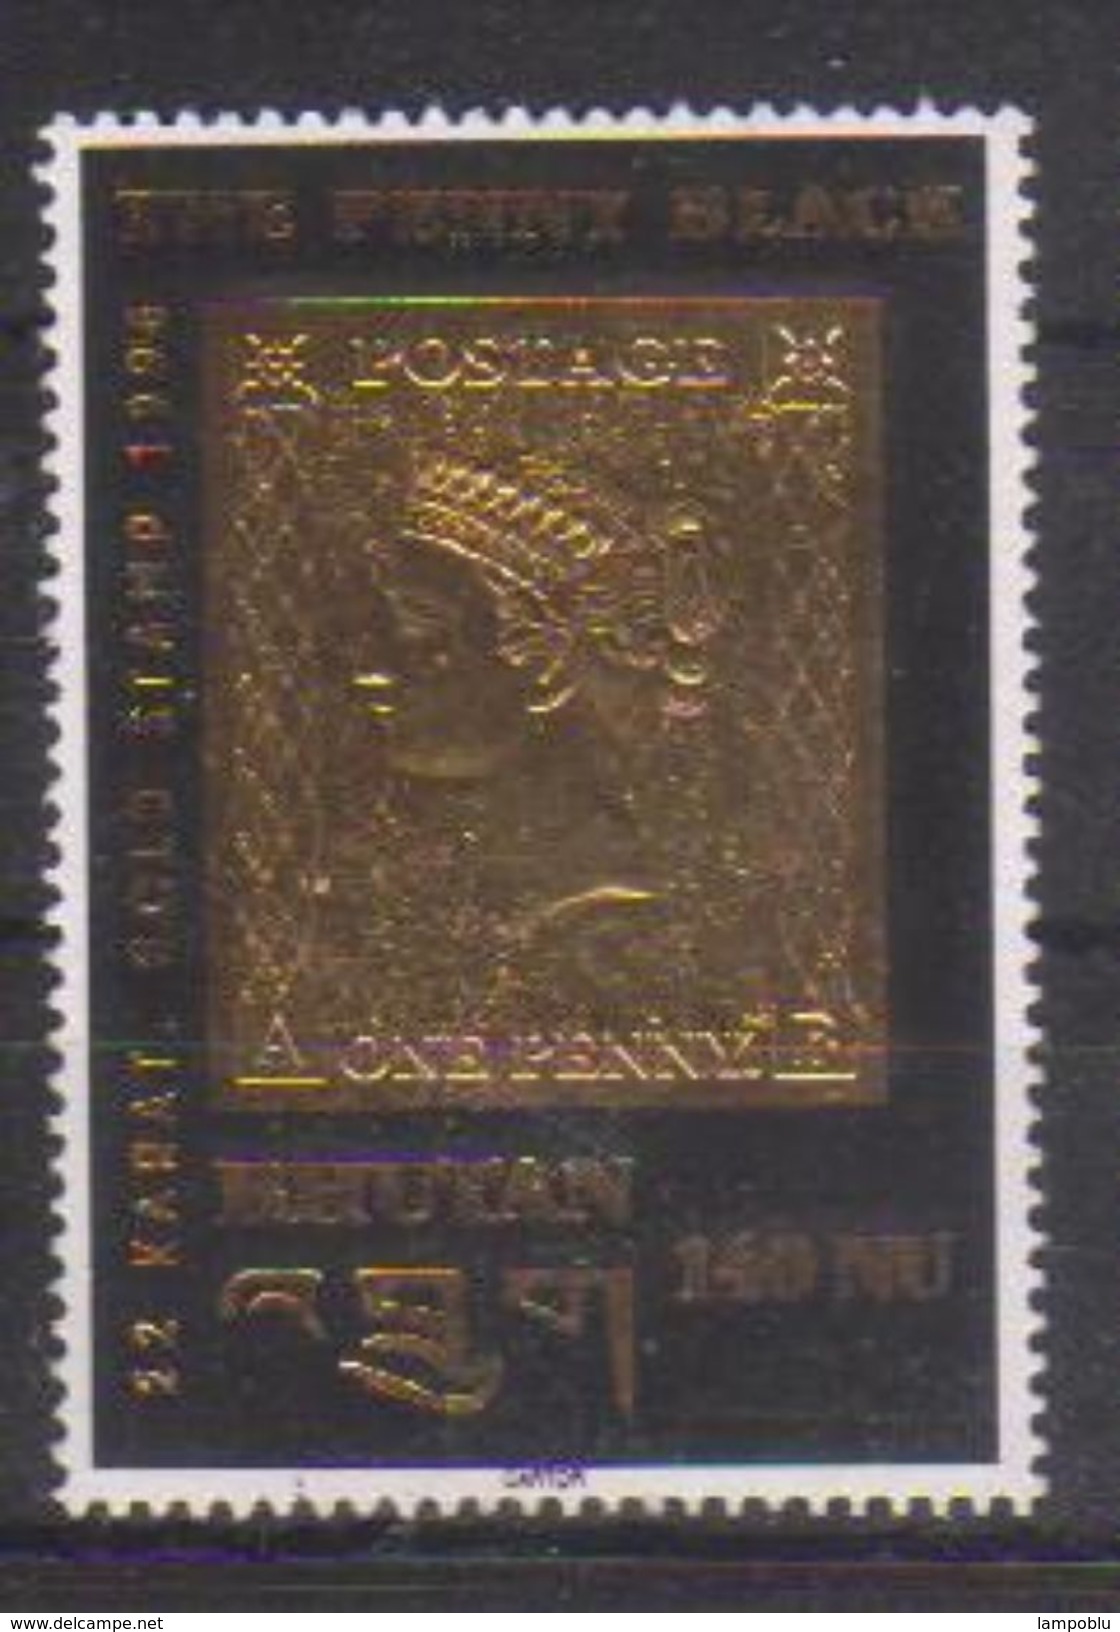 1966 - The Penny Black - Oro 22 Kt - Nuovo Con Retro Imperfetto (vedi Immagine) - Bhutan